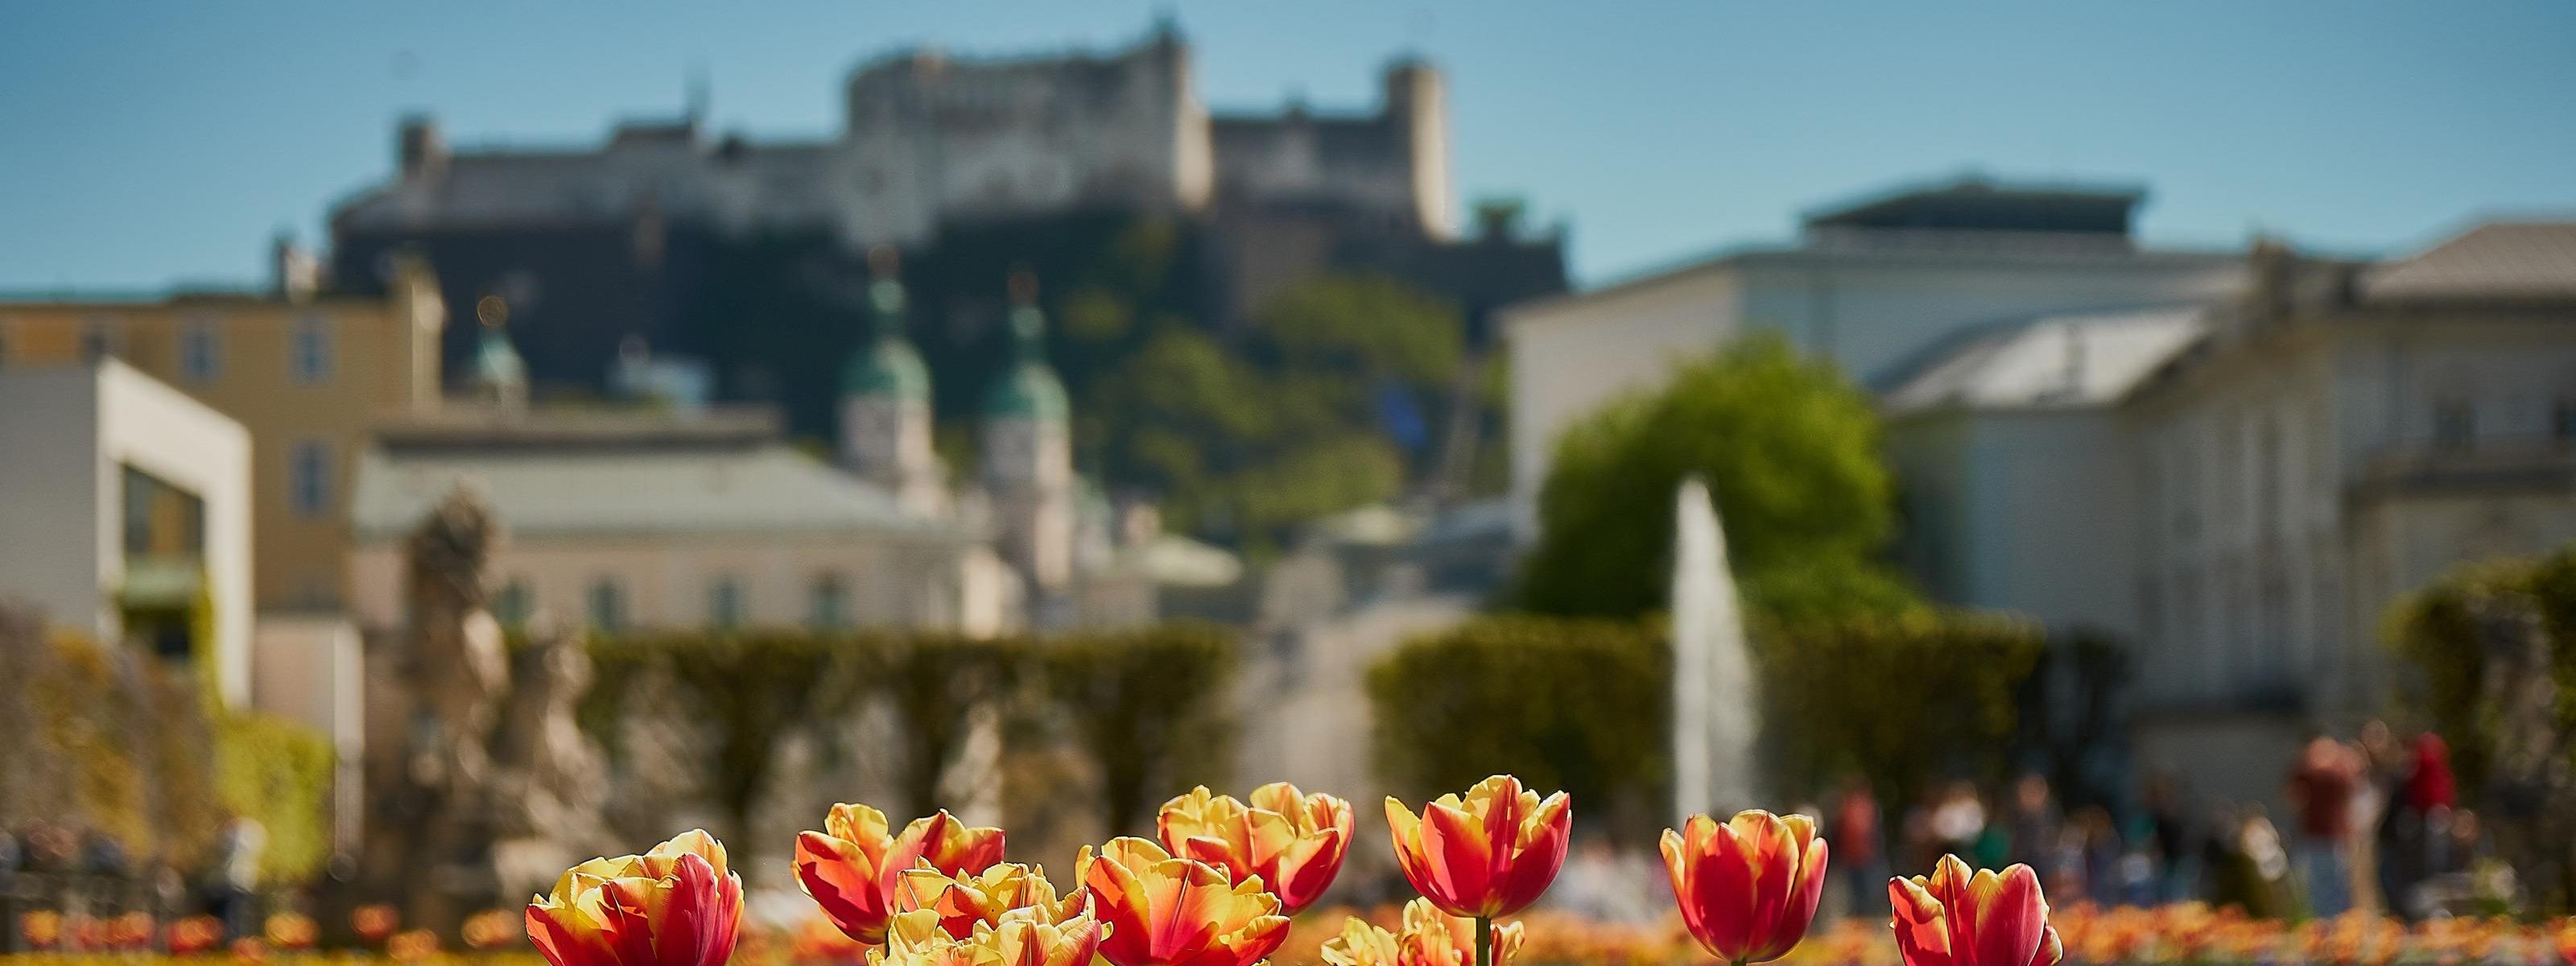 Im Fokus im Vordergrund rotgelbe Tulpen und violette Stiefmütterchen, im Hintergrund verschwommen Parkanlage mit Springbrunnen, historische Gebäude und auf Erhöhung Festung